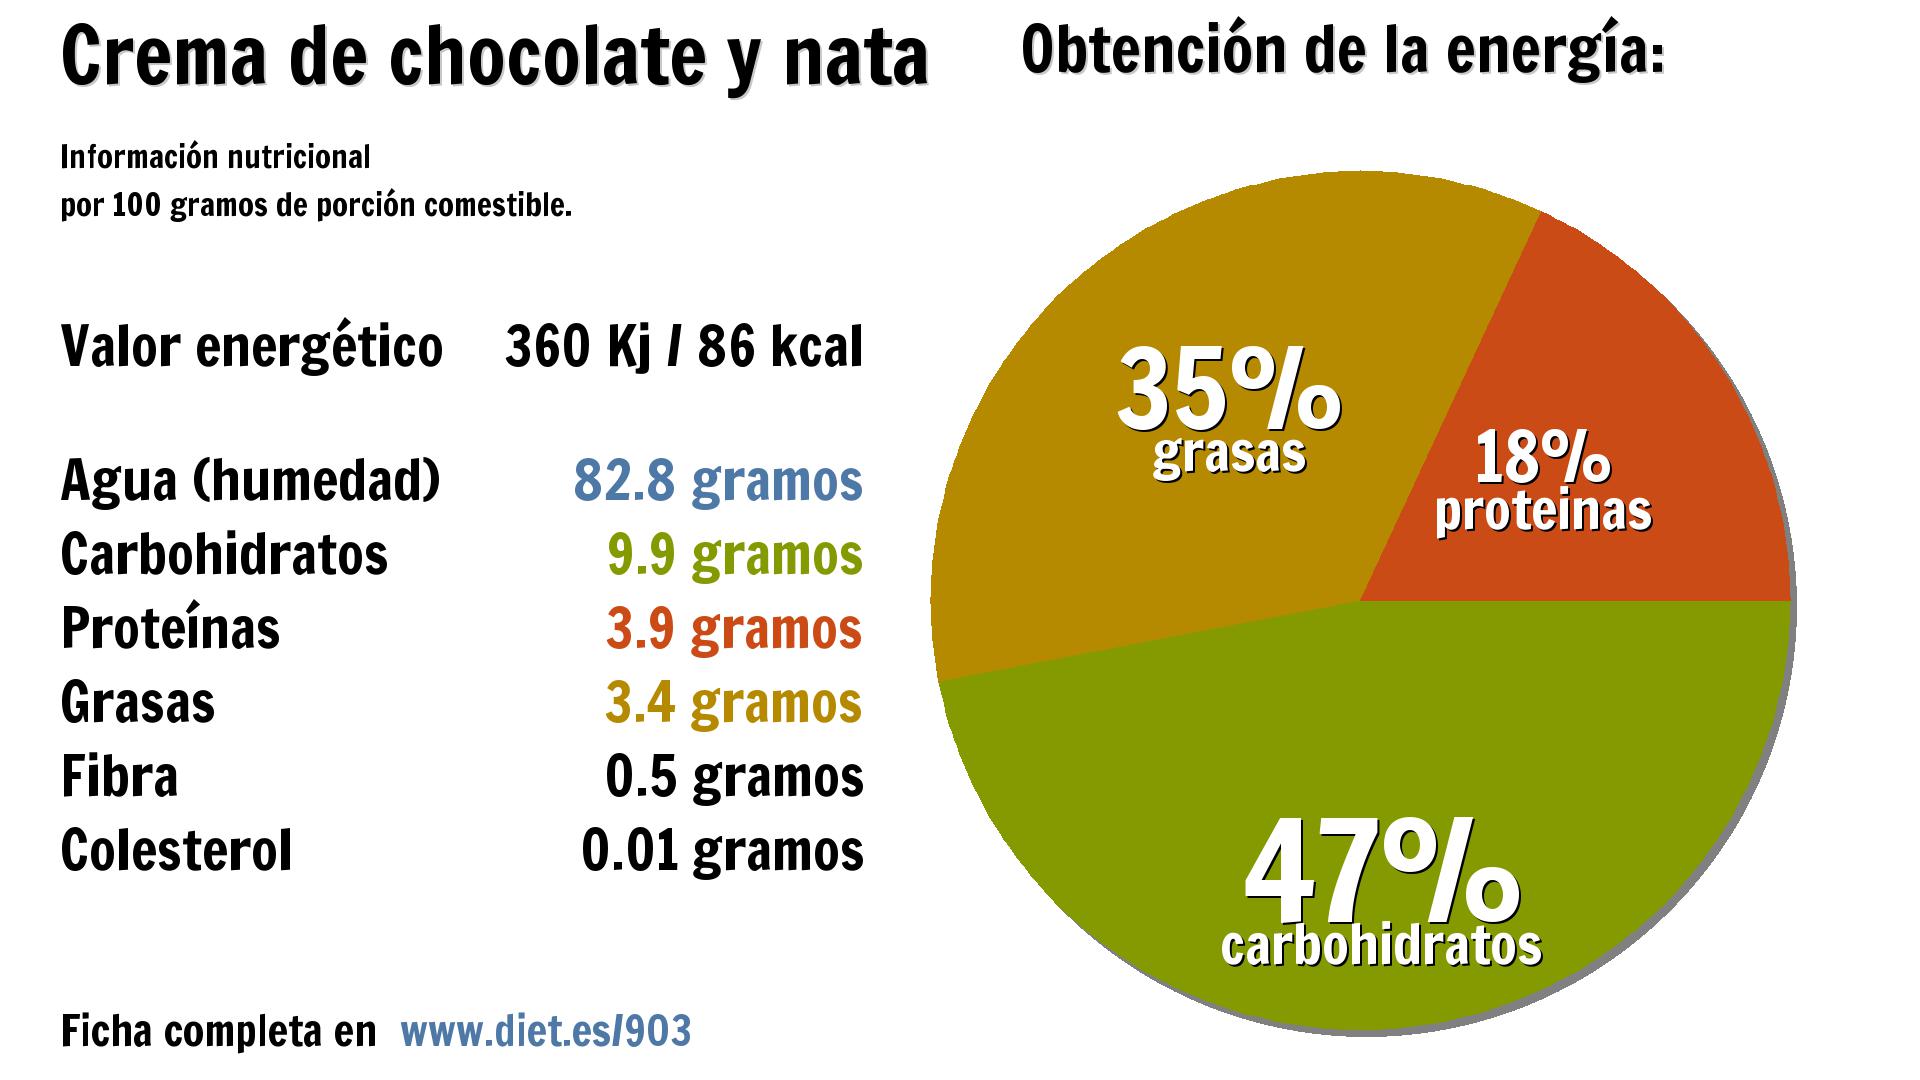 Crema de chocolate y nata: energía 360 Kj, agua 83 g., carbohidratos 10 g., proteínas 4 g., grasas 3 g. y fibra 1 g.